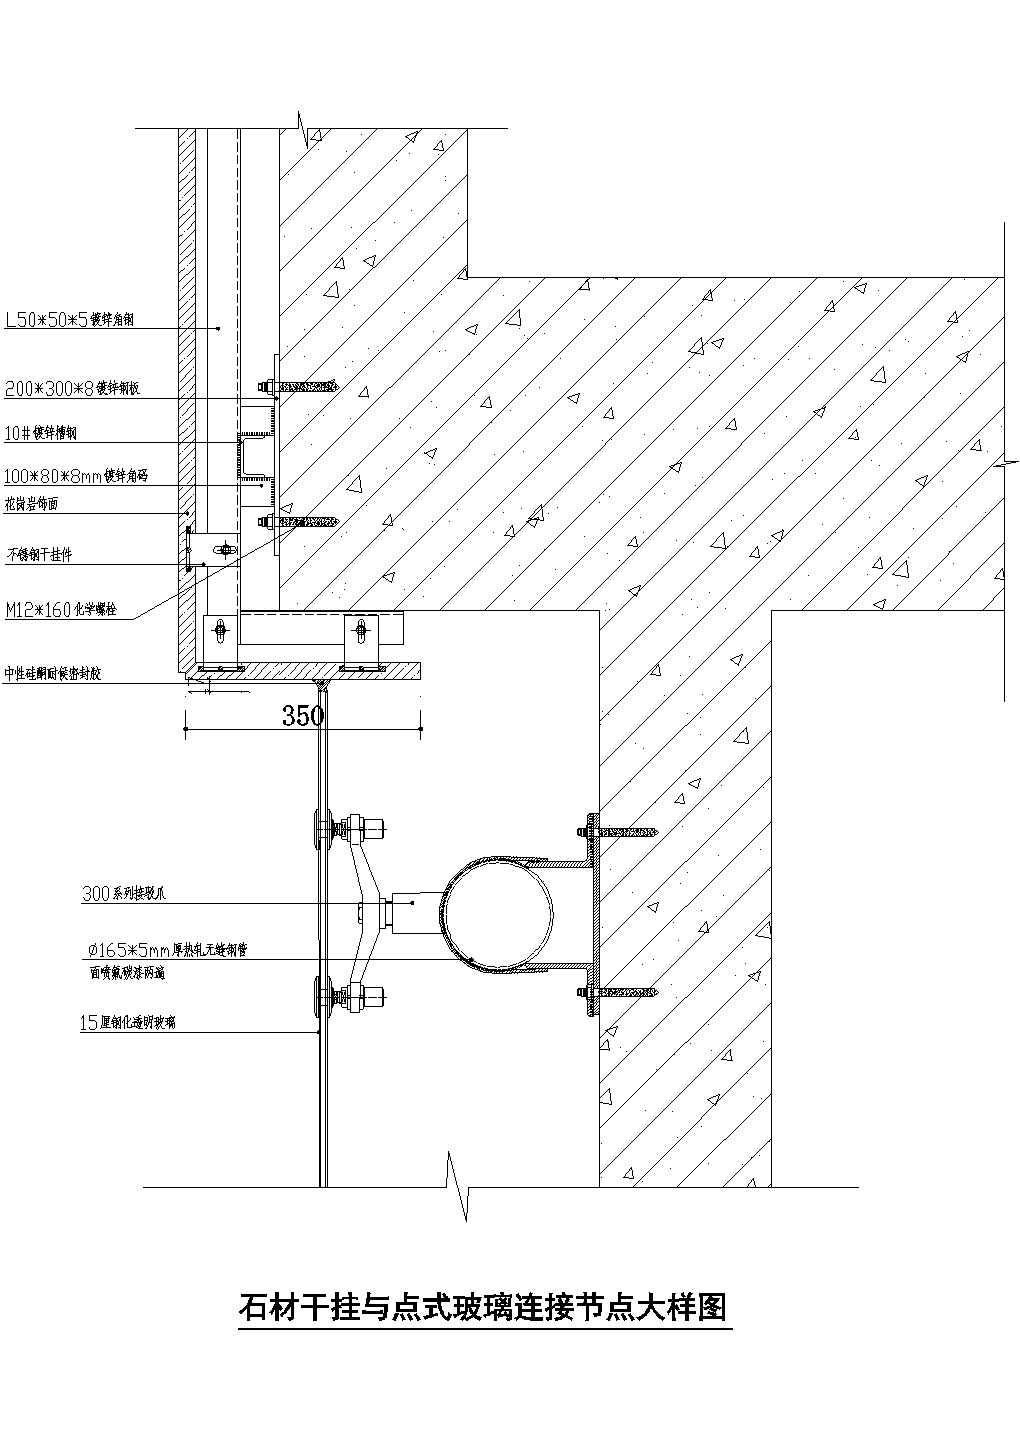 石材干挂与点式玻璃连接节点详图CAD施工图设计